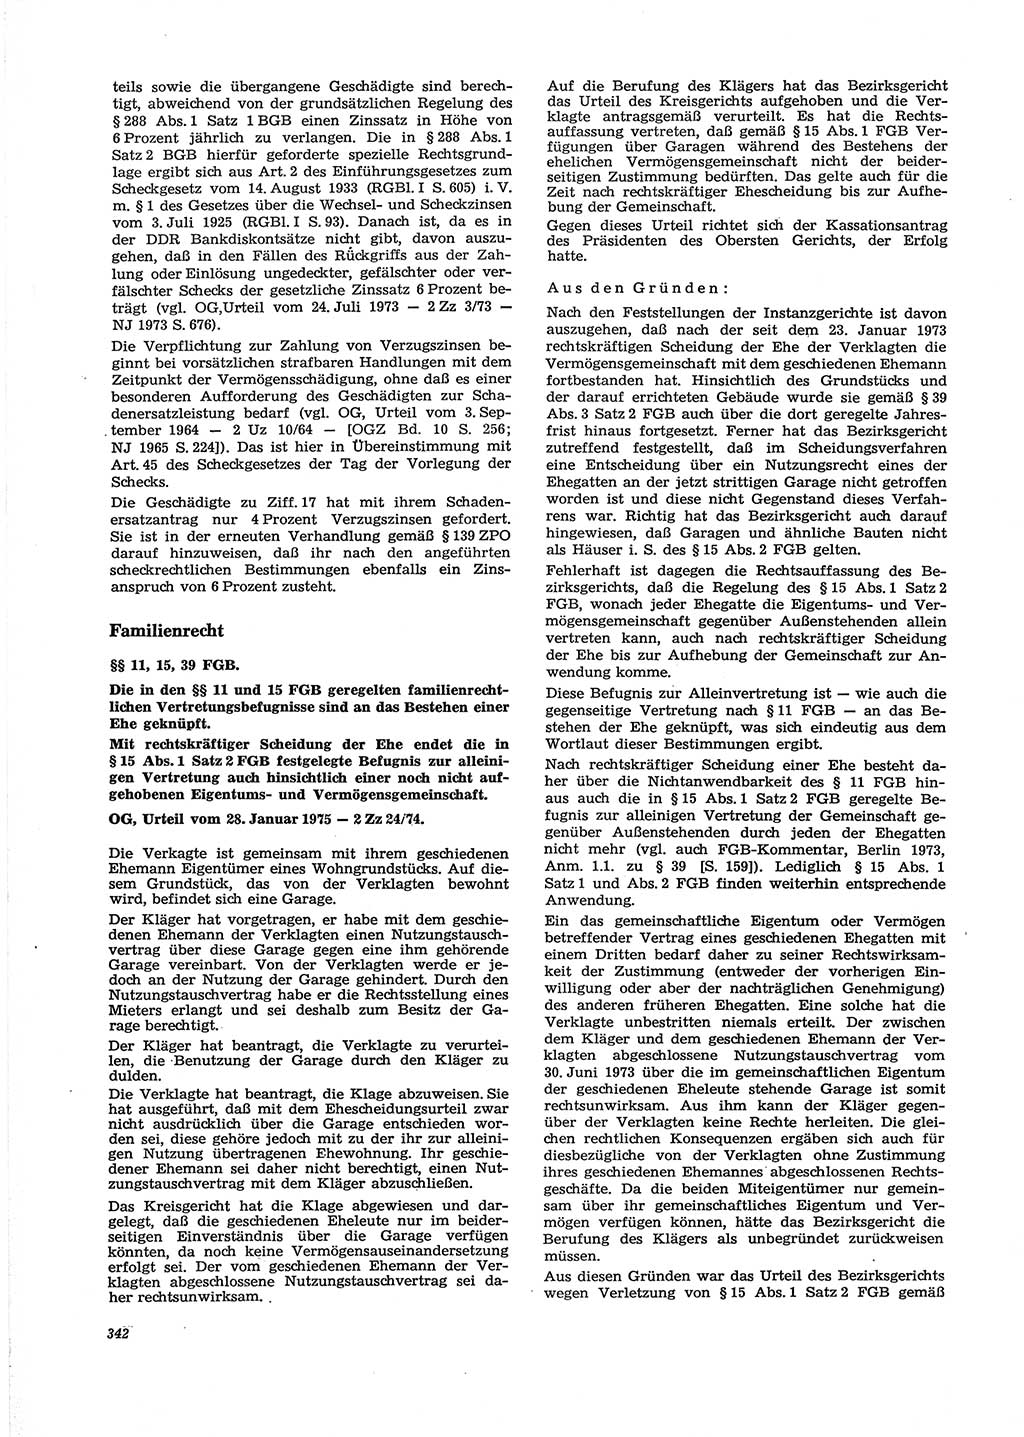 Neue Justiz (NJ), Zeitschrift für Recht und Rechtswissenschaft [Deutsche Demokratische Republik (DDR)], 29. Jahrgang 1975, Seite 342 (NJ DDR 1975, S. 342)